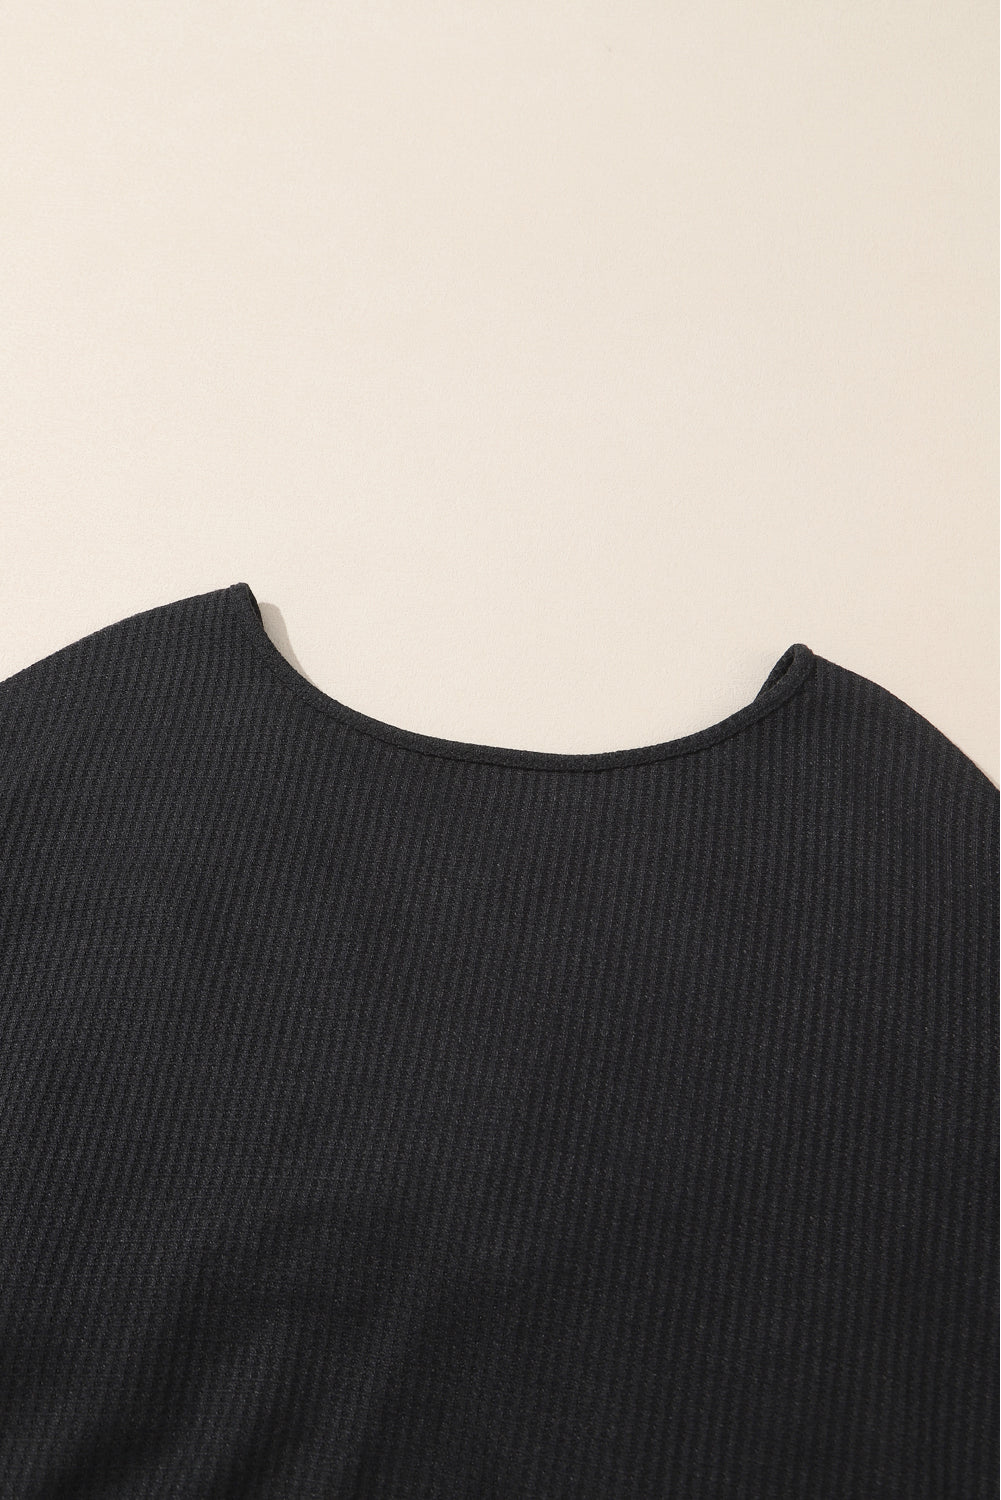 Crna pletena majica s otvorenim leđima i patchwork rukavima sa šljokicama